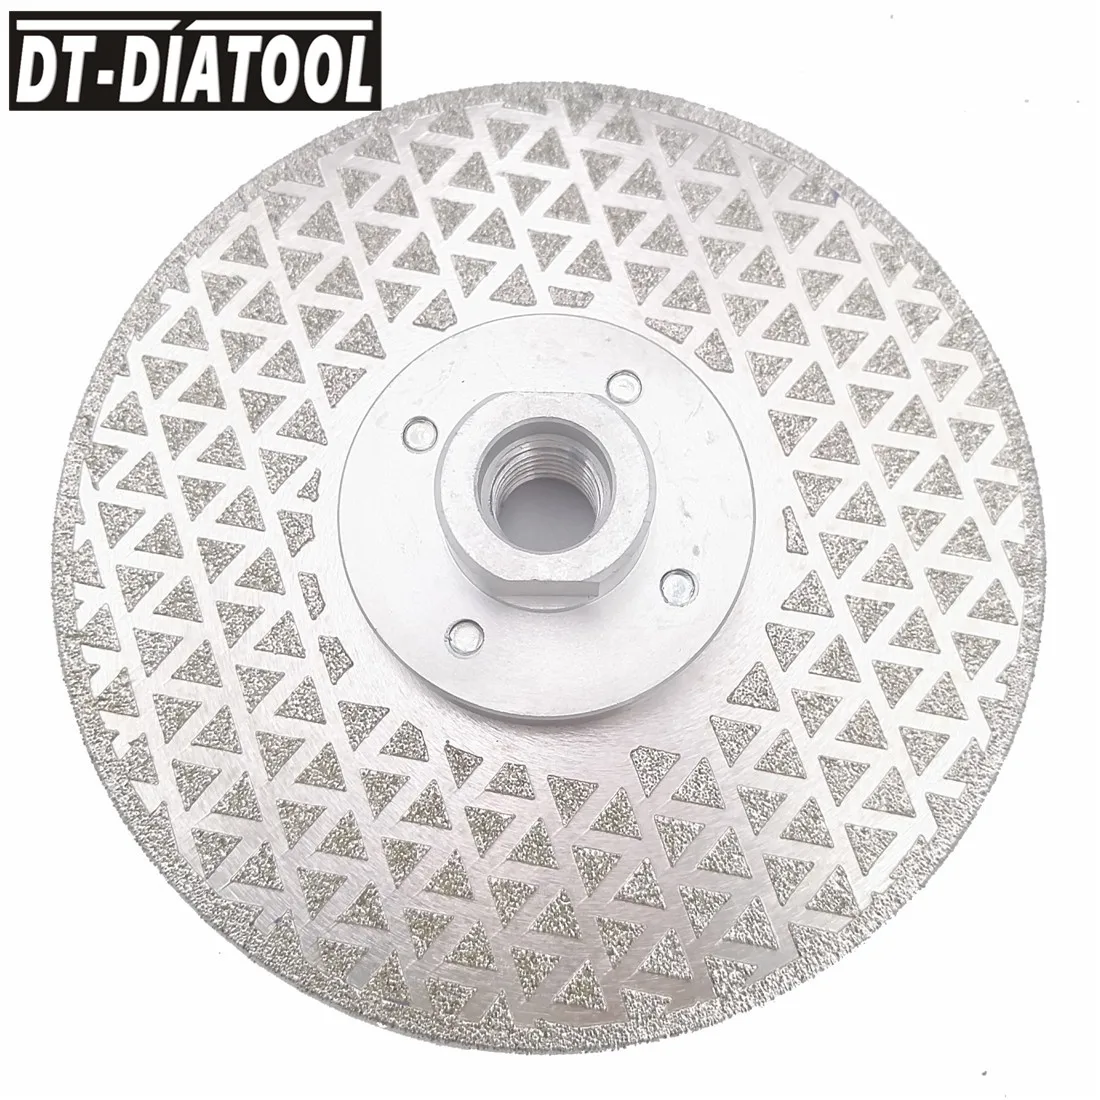 DT-DIATOOL 2шт 125 мм Гальваническое алмазное режущее дисковое шлифовальное колесо с двухсторонним покрытием M14 для шлифовальной машины 5 дюймов п... от AliExpress RU&CIS NEW